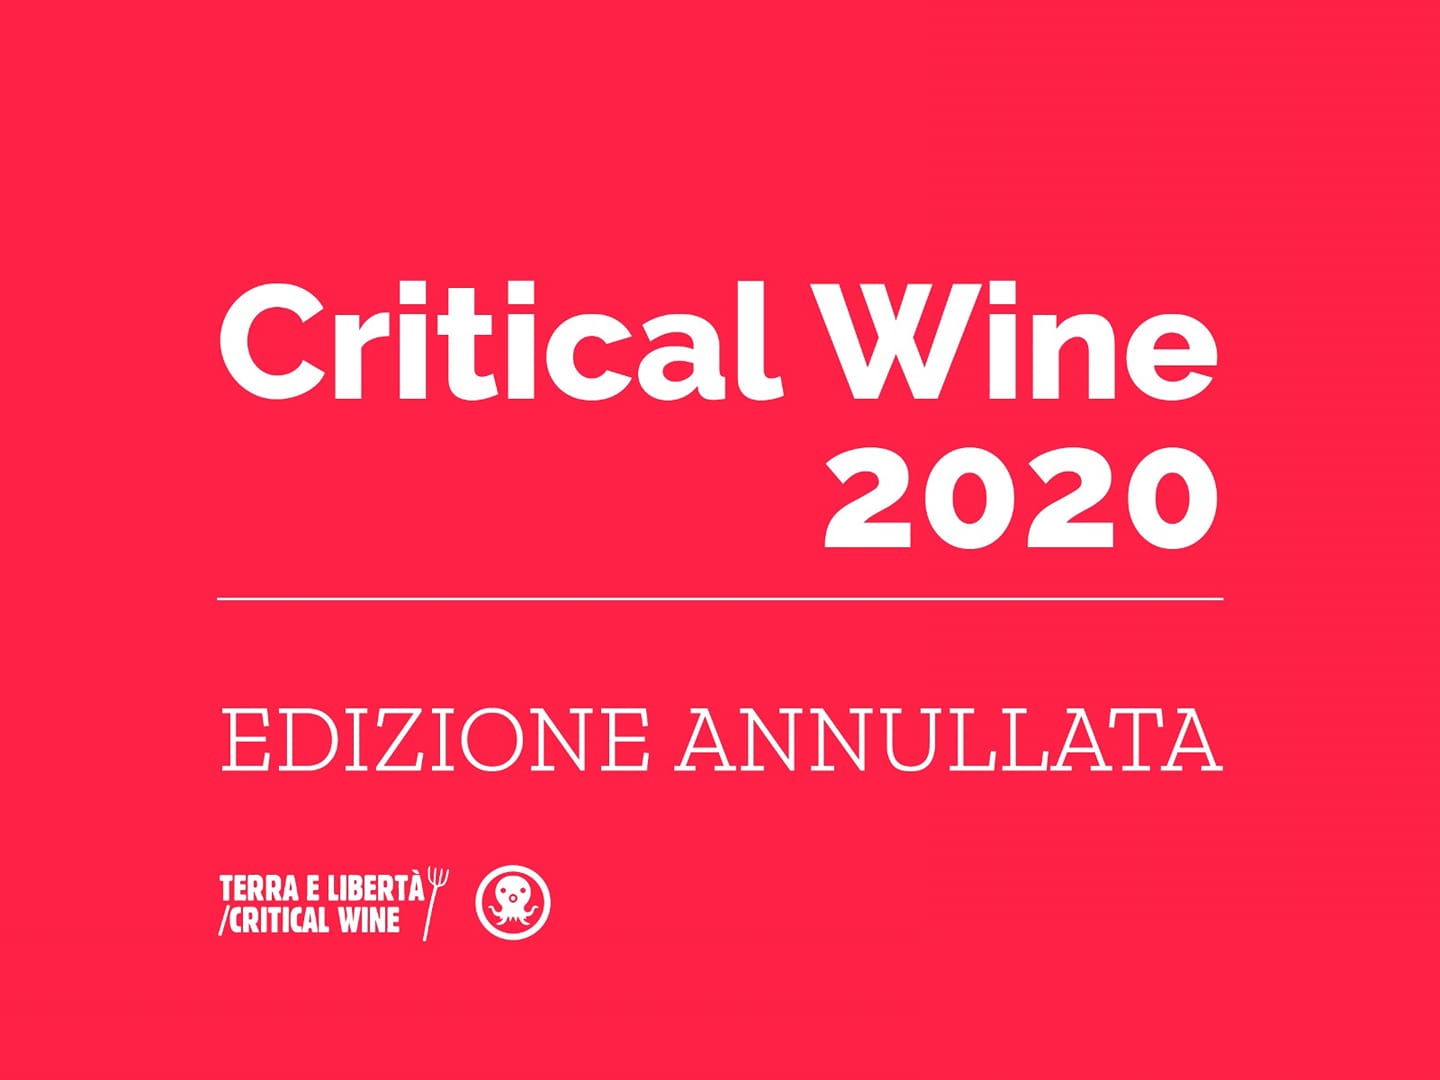 Critical Wine 2020, EDIZIONE ANNULLATA.